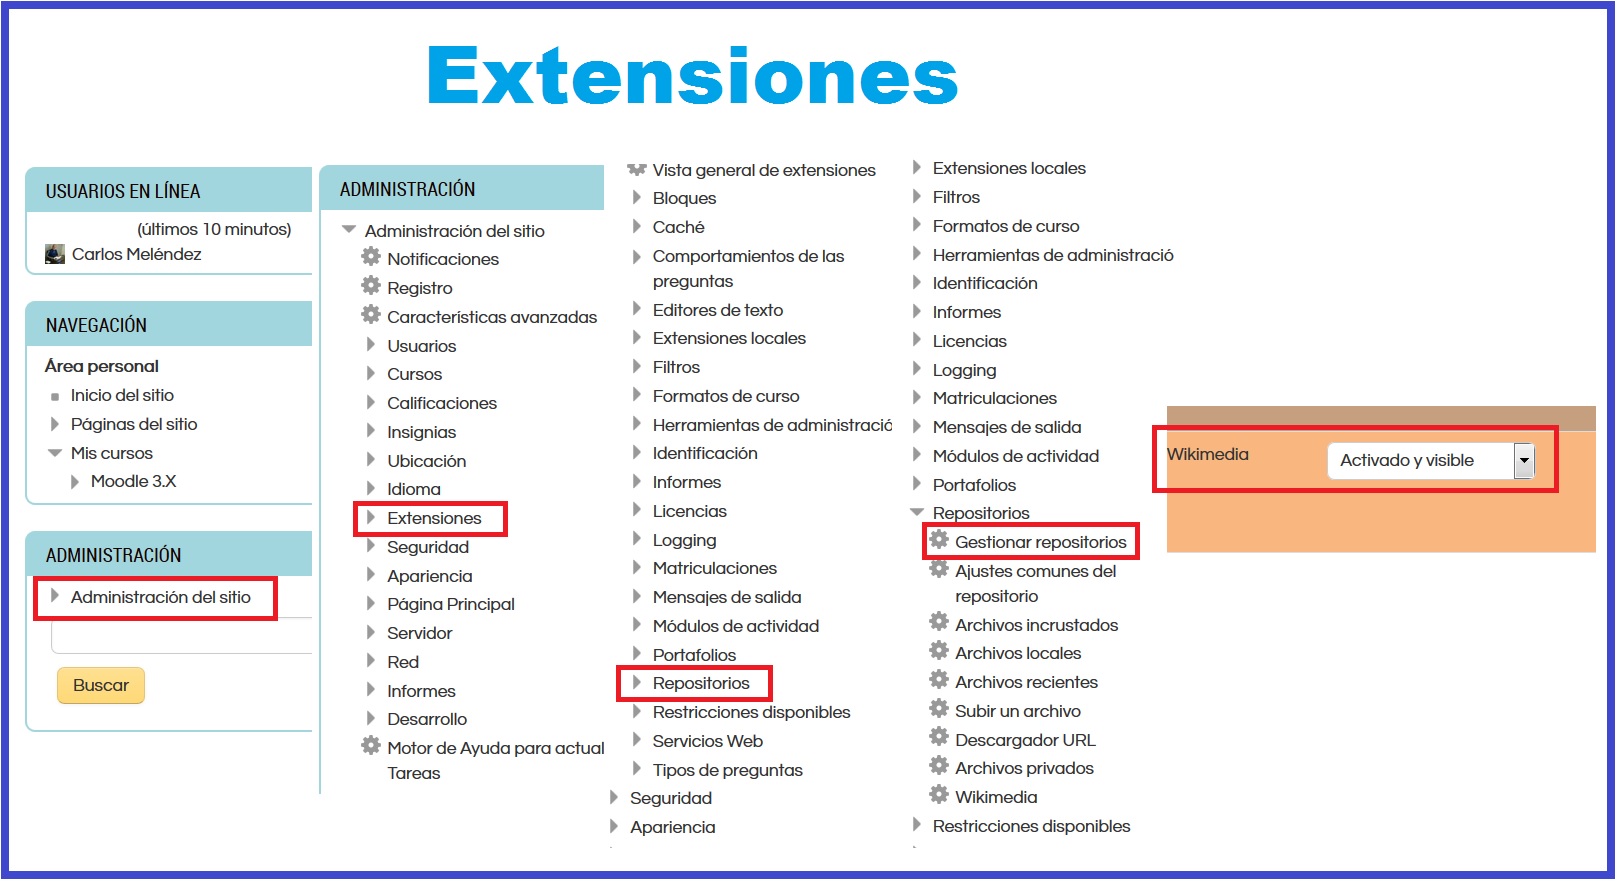 Extensiones 2